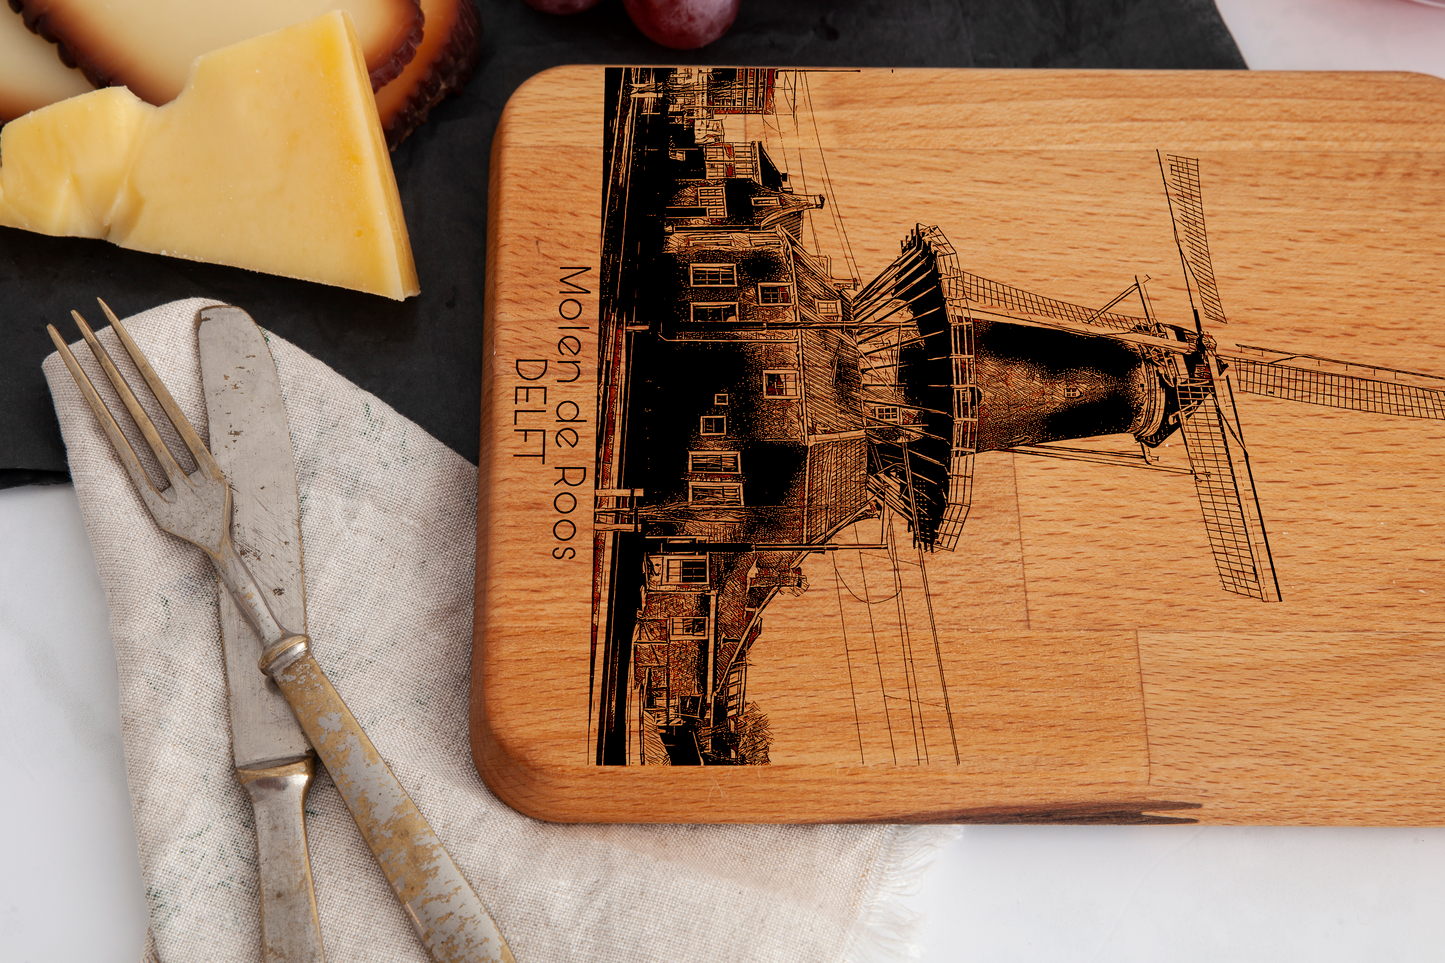 Delft, Molen de Roos, cheese board, wood grain